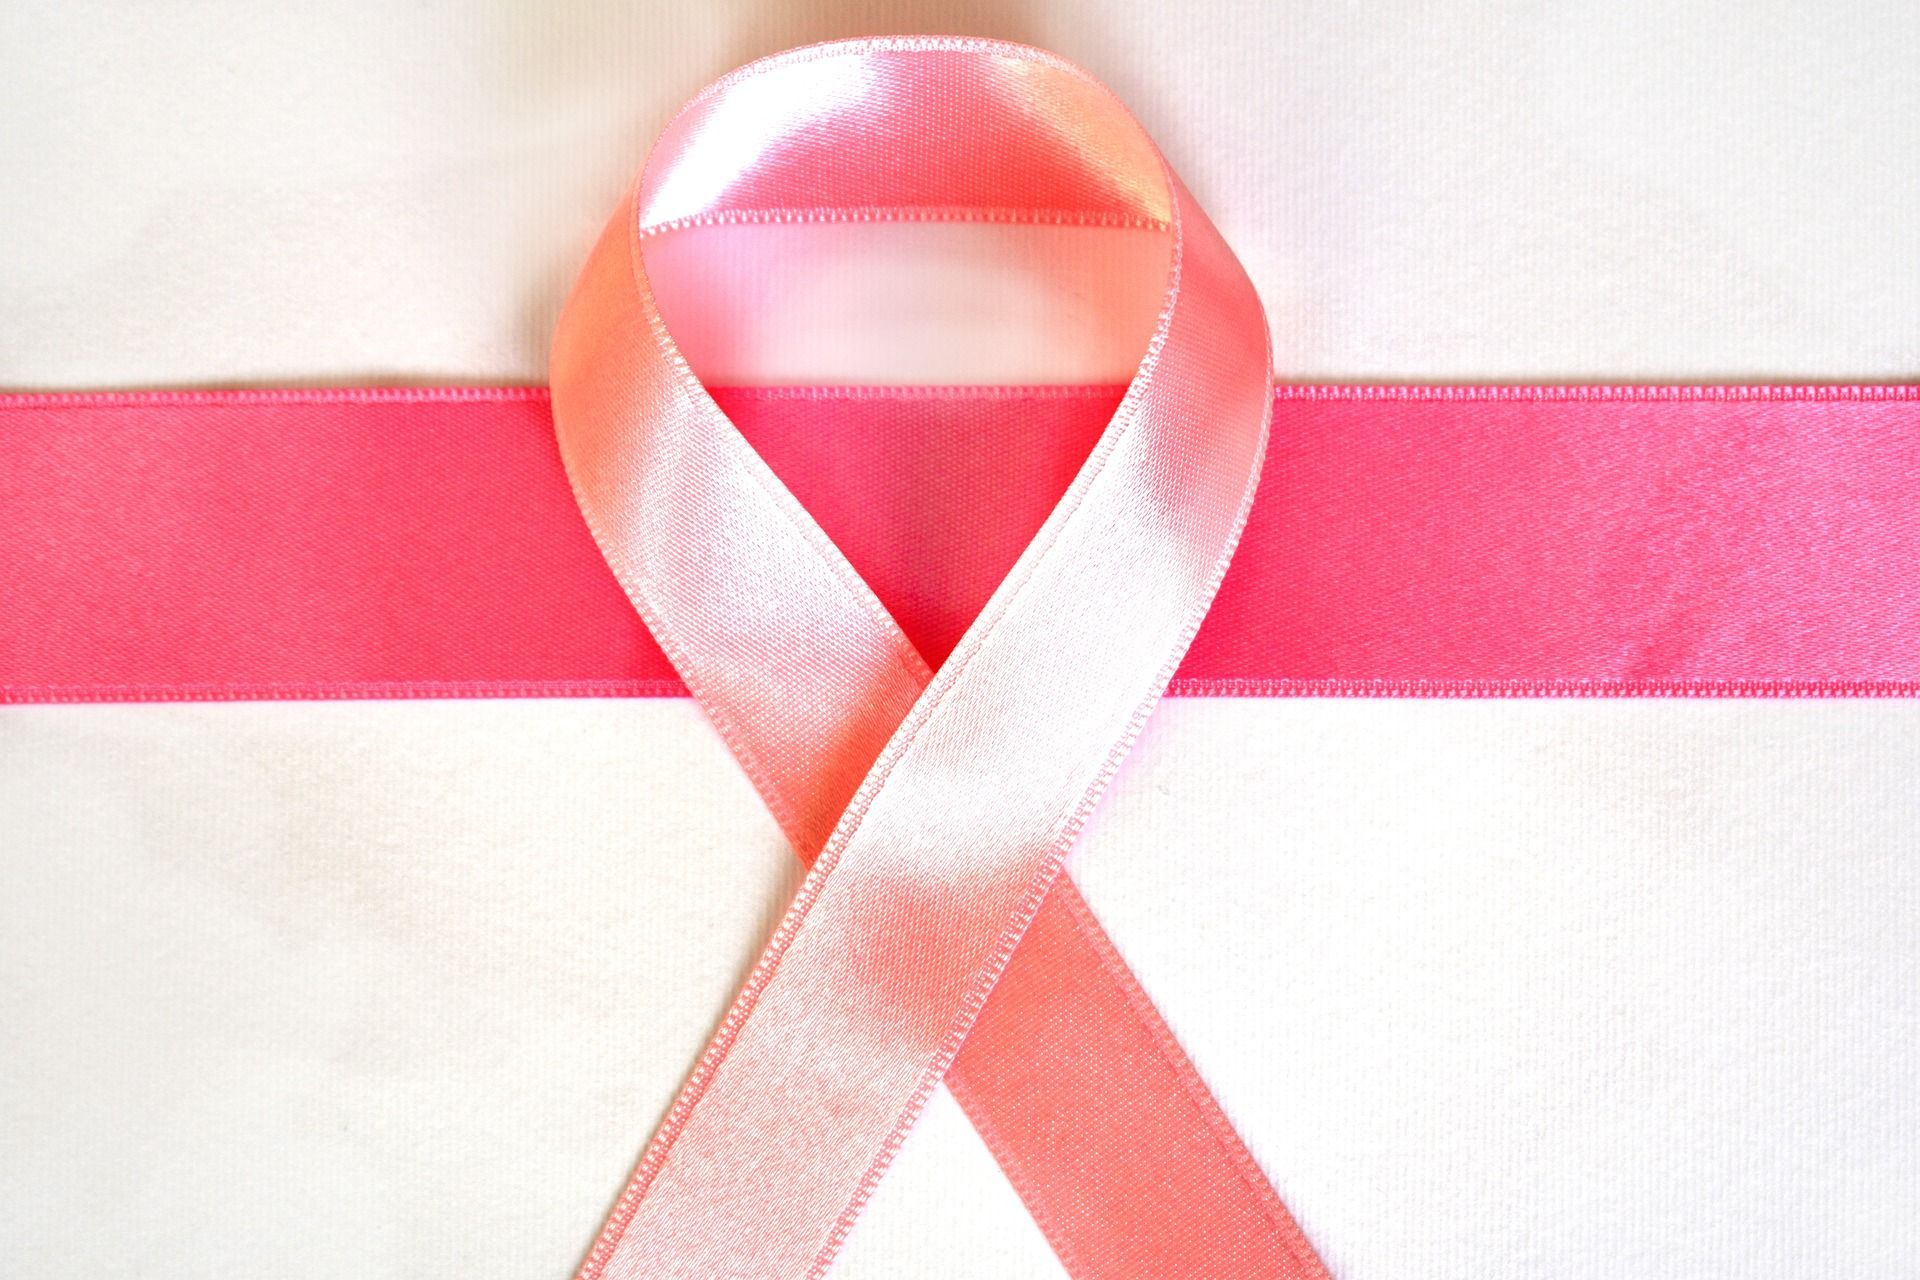 USG piersi - wskazania. Czym różni się od mammografii?